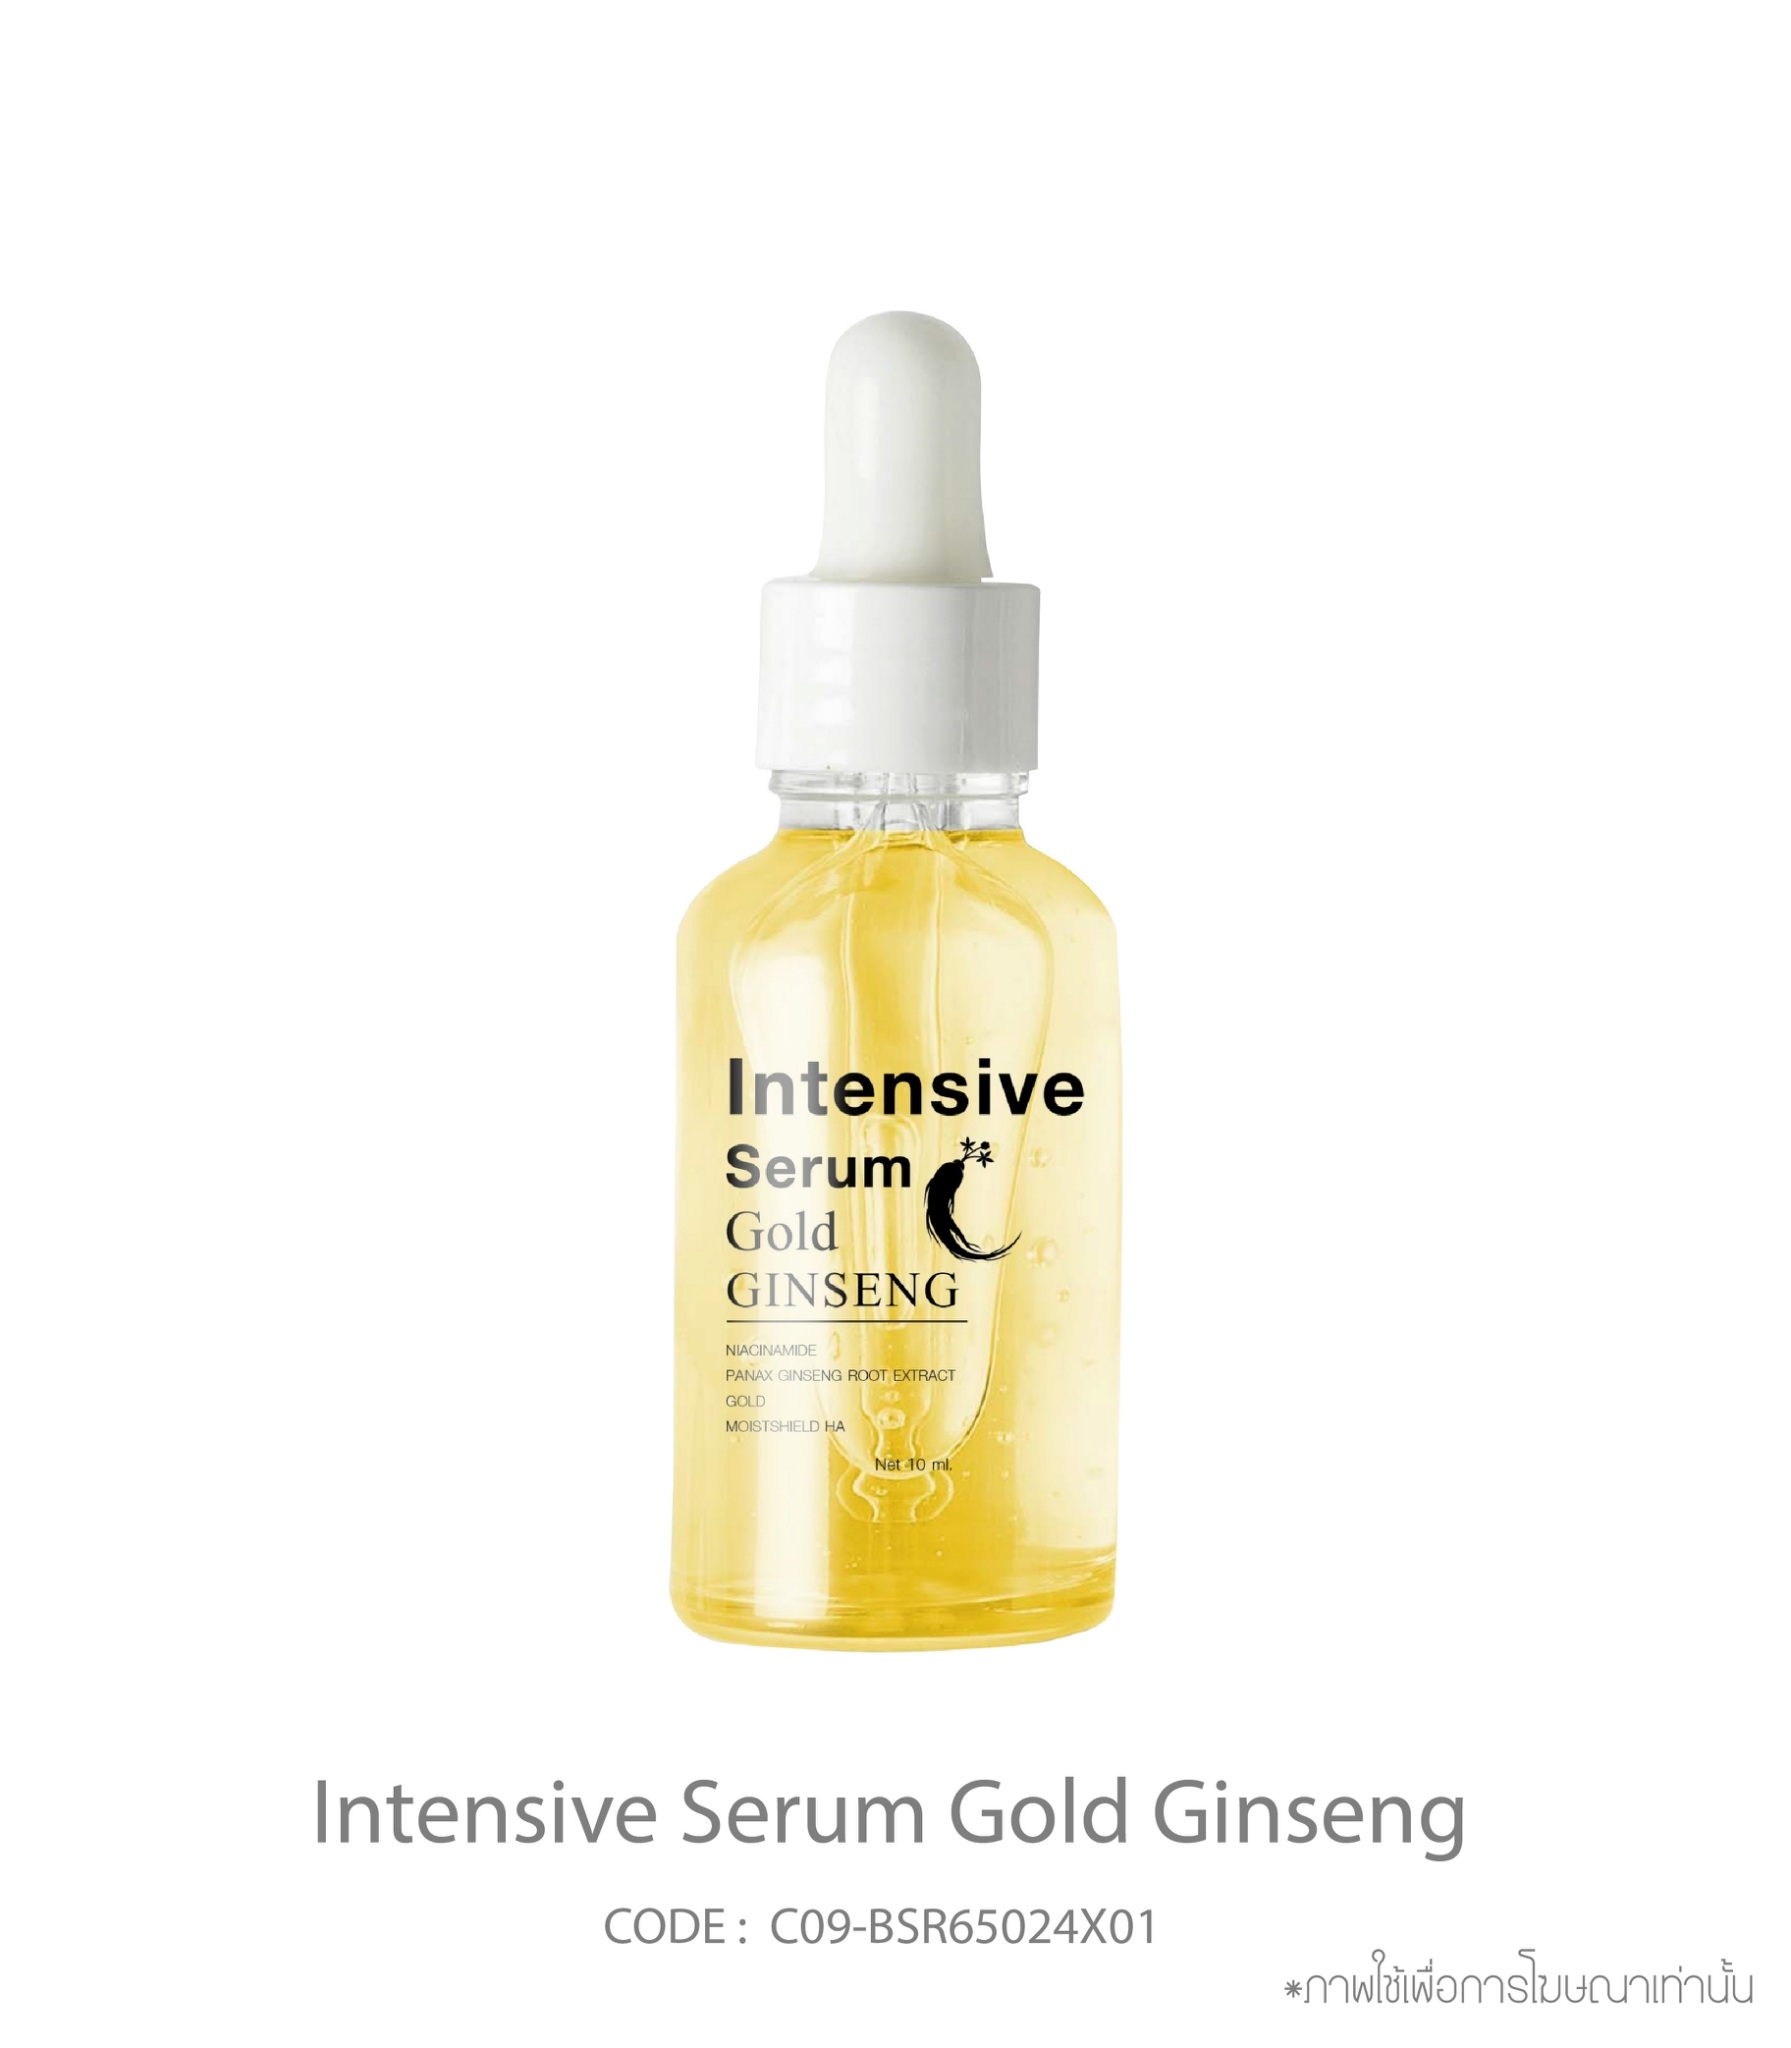 Intensive Serum Gold Ginseng